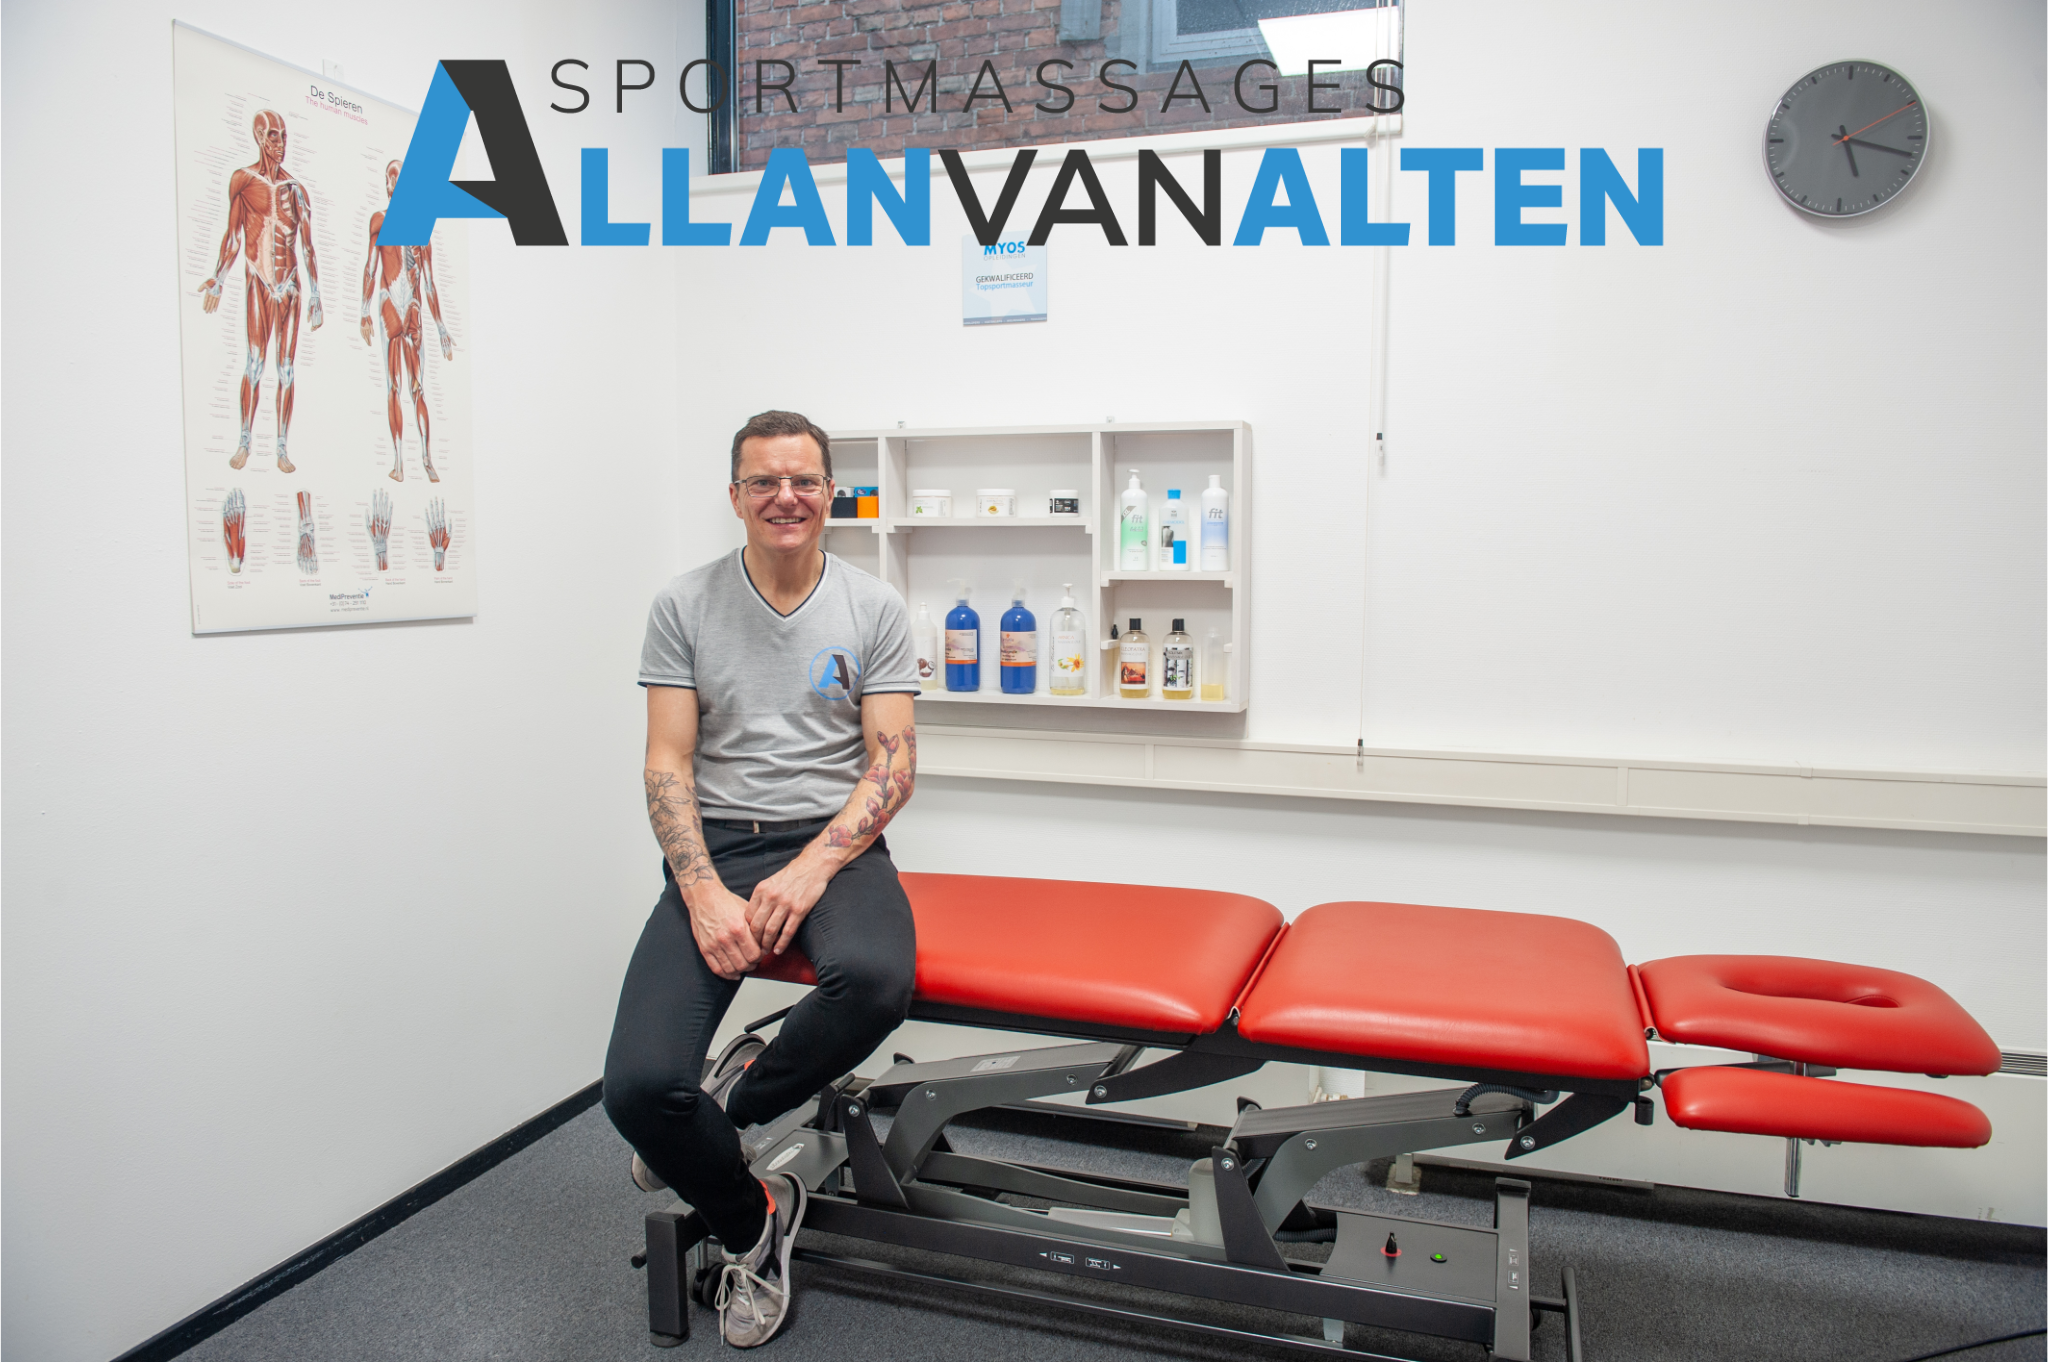 Allan van Alten - Sportmasseur